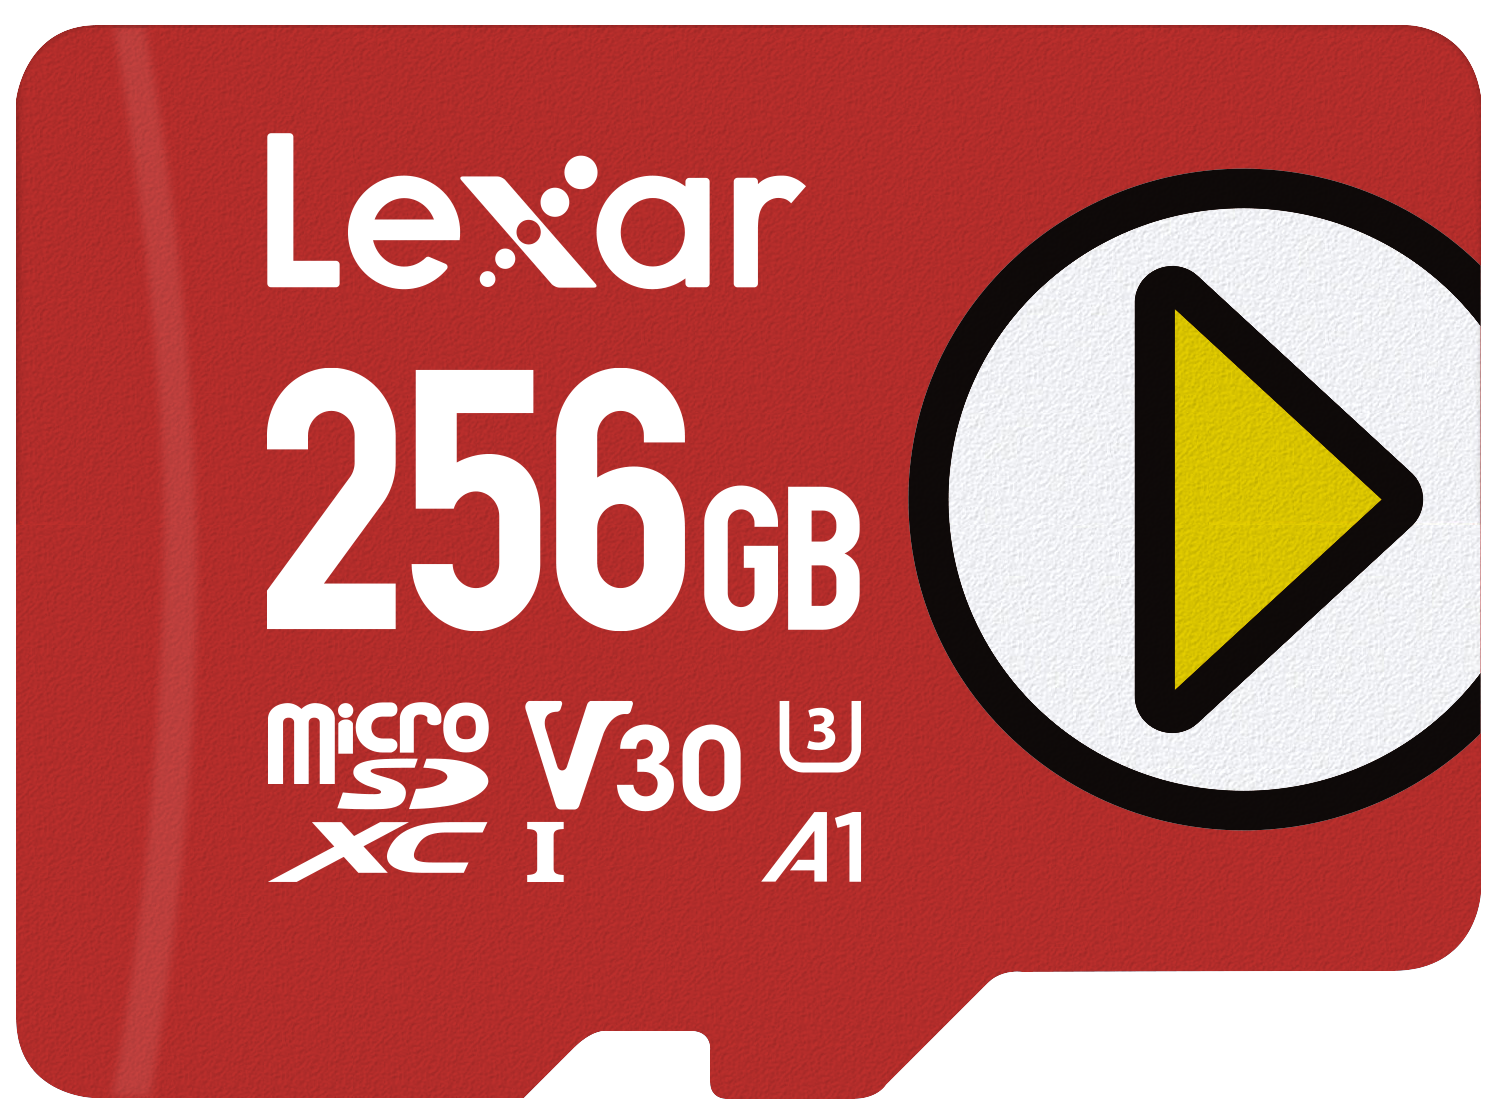 Comparer les prix : Verbatim Carte mémoire SDXC U1 Premium - 128 Go - carte  SD pour l'enregistrement de vidéos en Full HD - carte avec protection  d'écriture intégrée - noire 